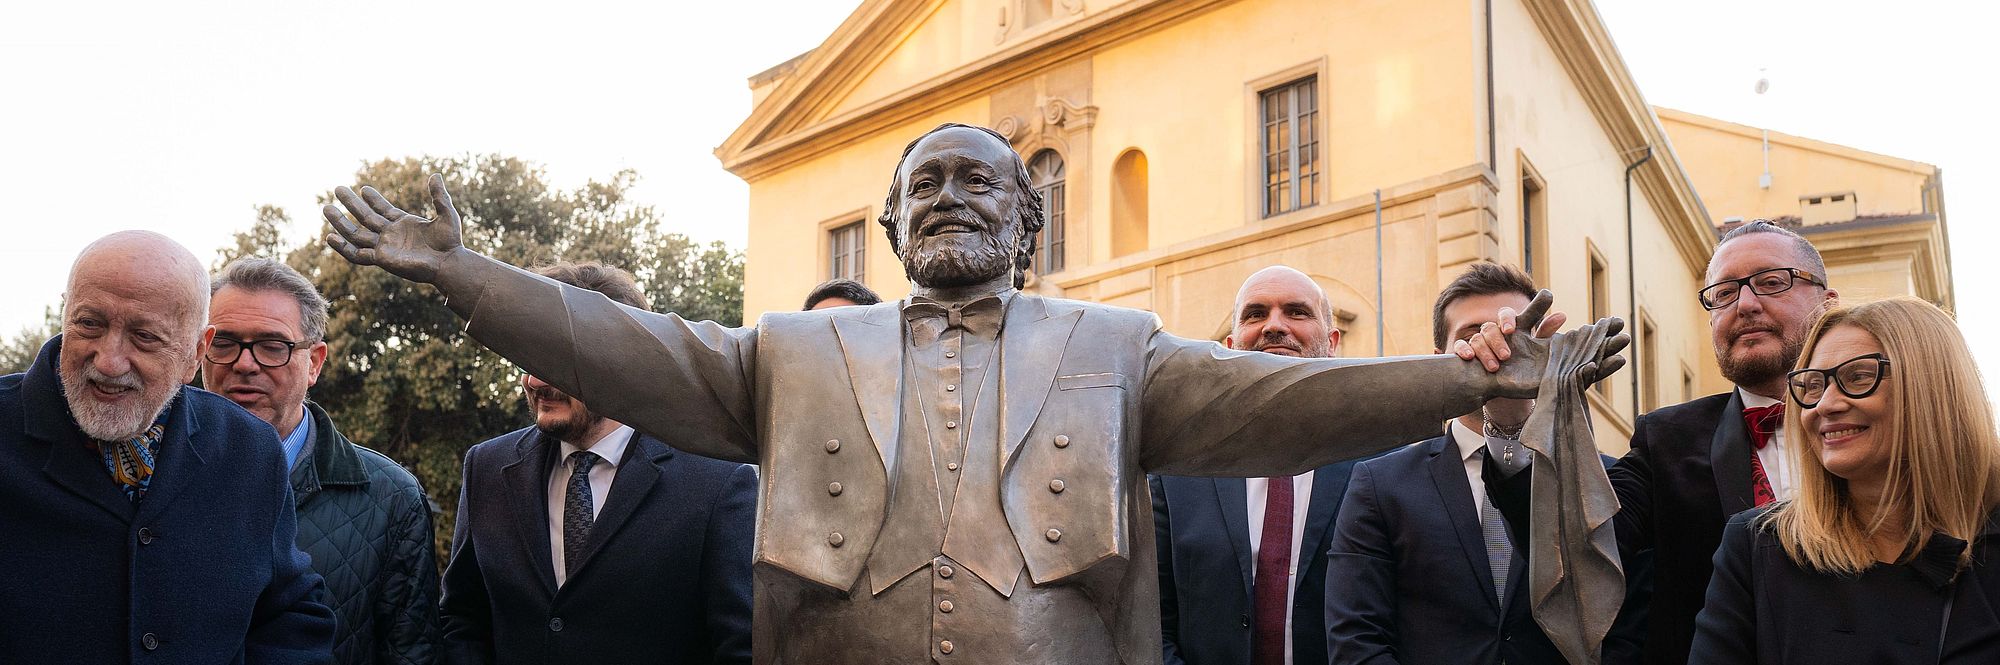 Statua di Pavarotti con Nicoletta Mantovani e altri